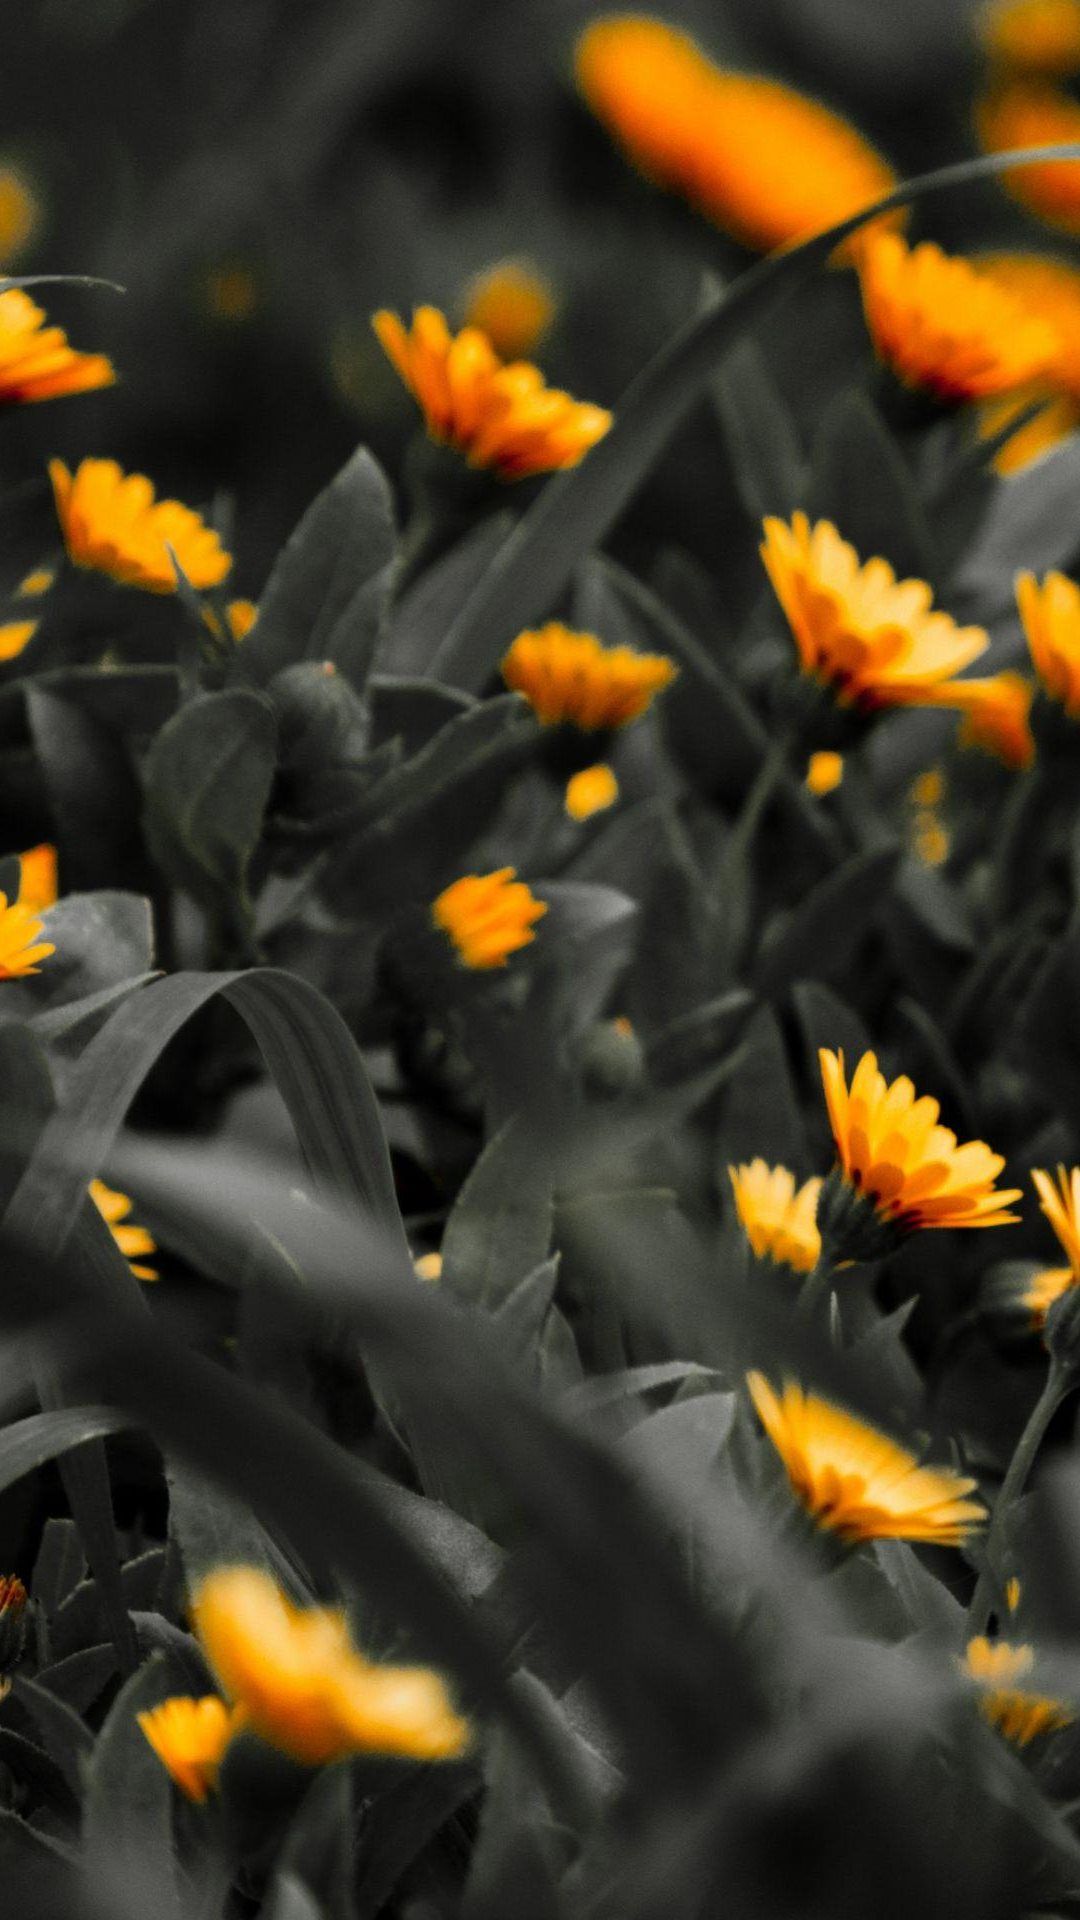 hd nero per il download gratuito per cellulari,fiore,giallo,pianta,petalo,arancia